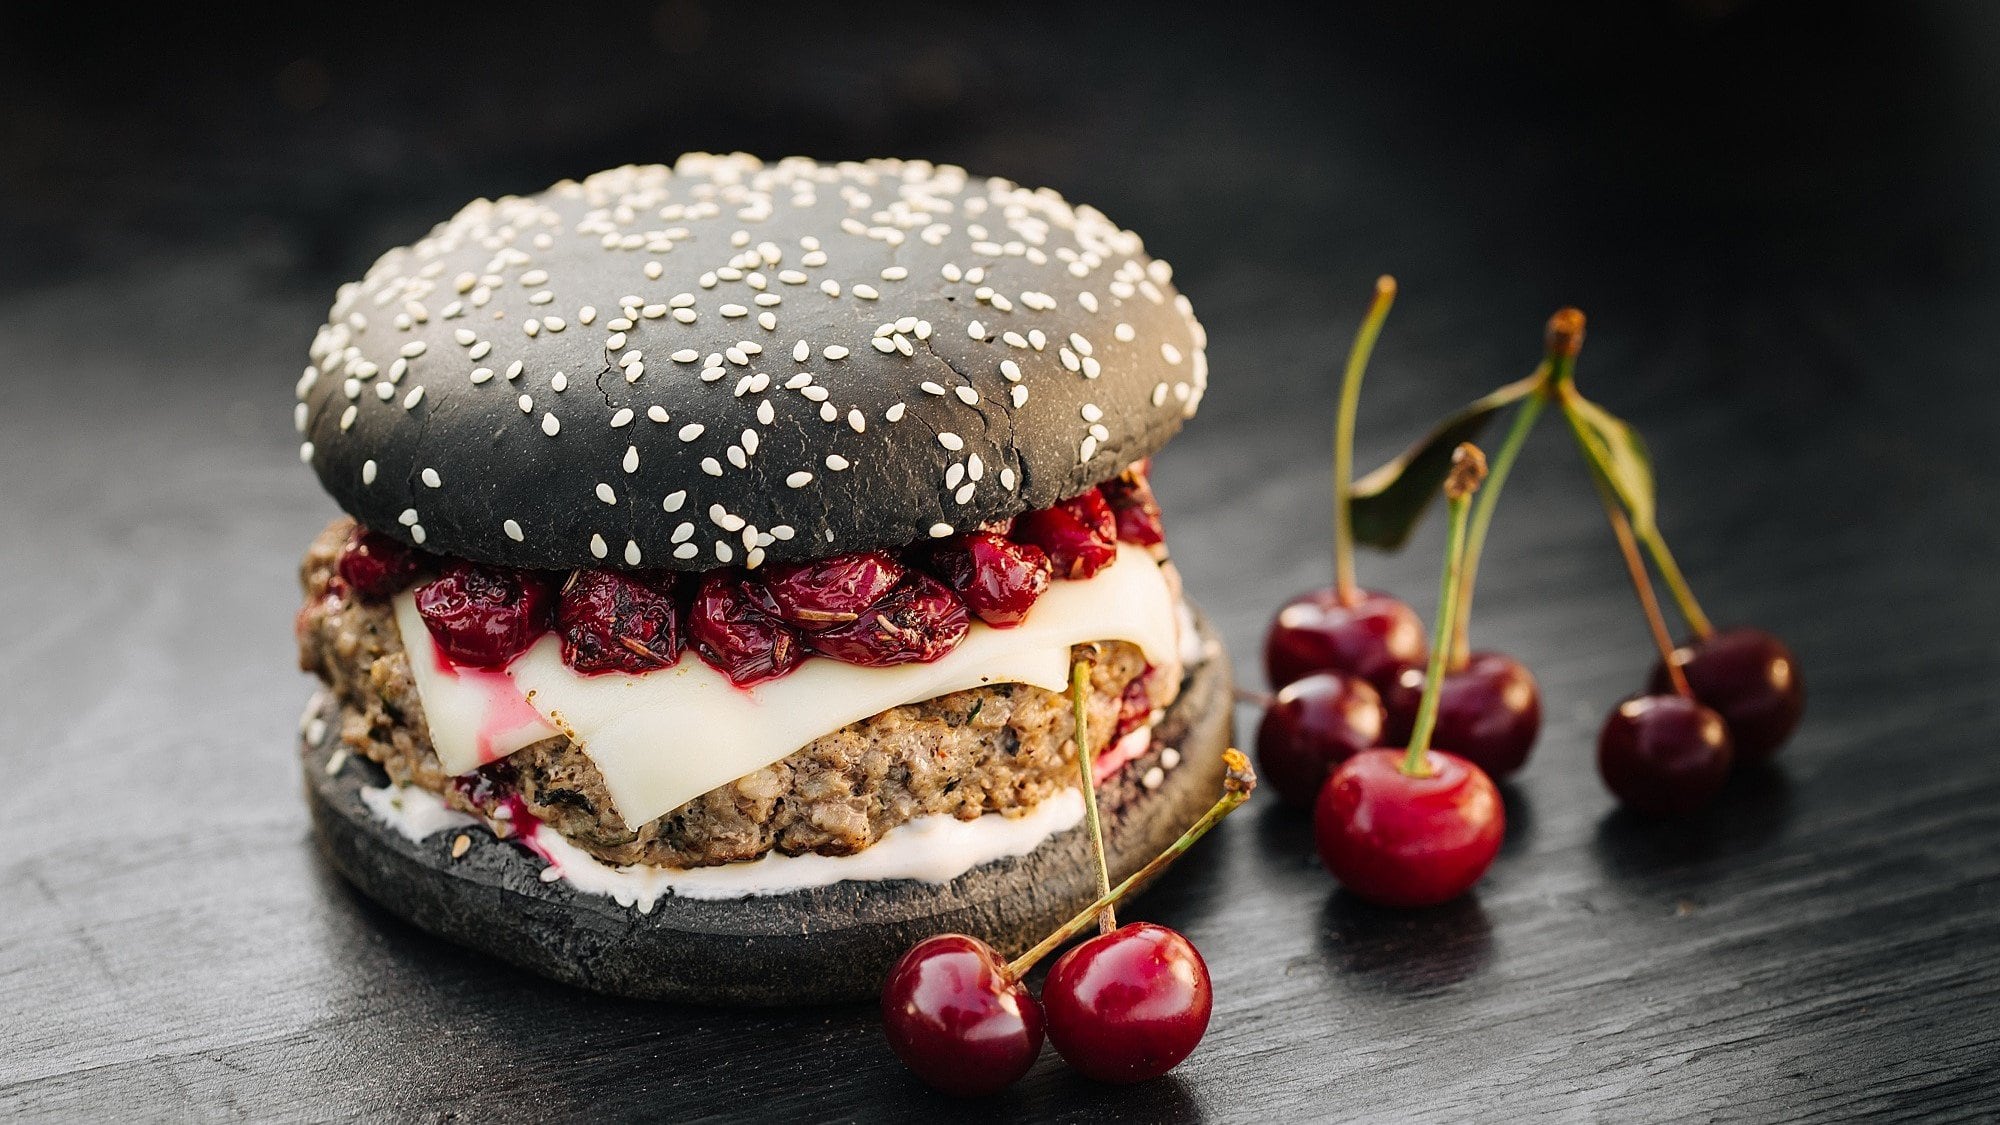 Ein Burger mit Sauerkirschen steht auf einem dunklen Holztisch. Der Burger besteht aus schwarzen Burgerbuns, Rindfleischpatties, Käse und Sauerkirschen.